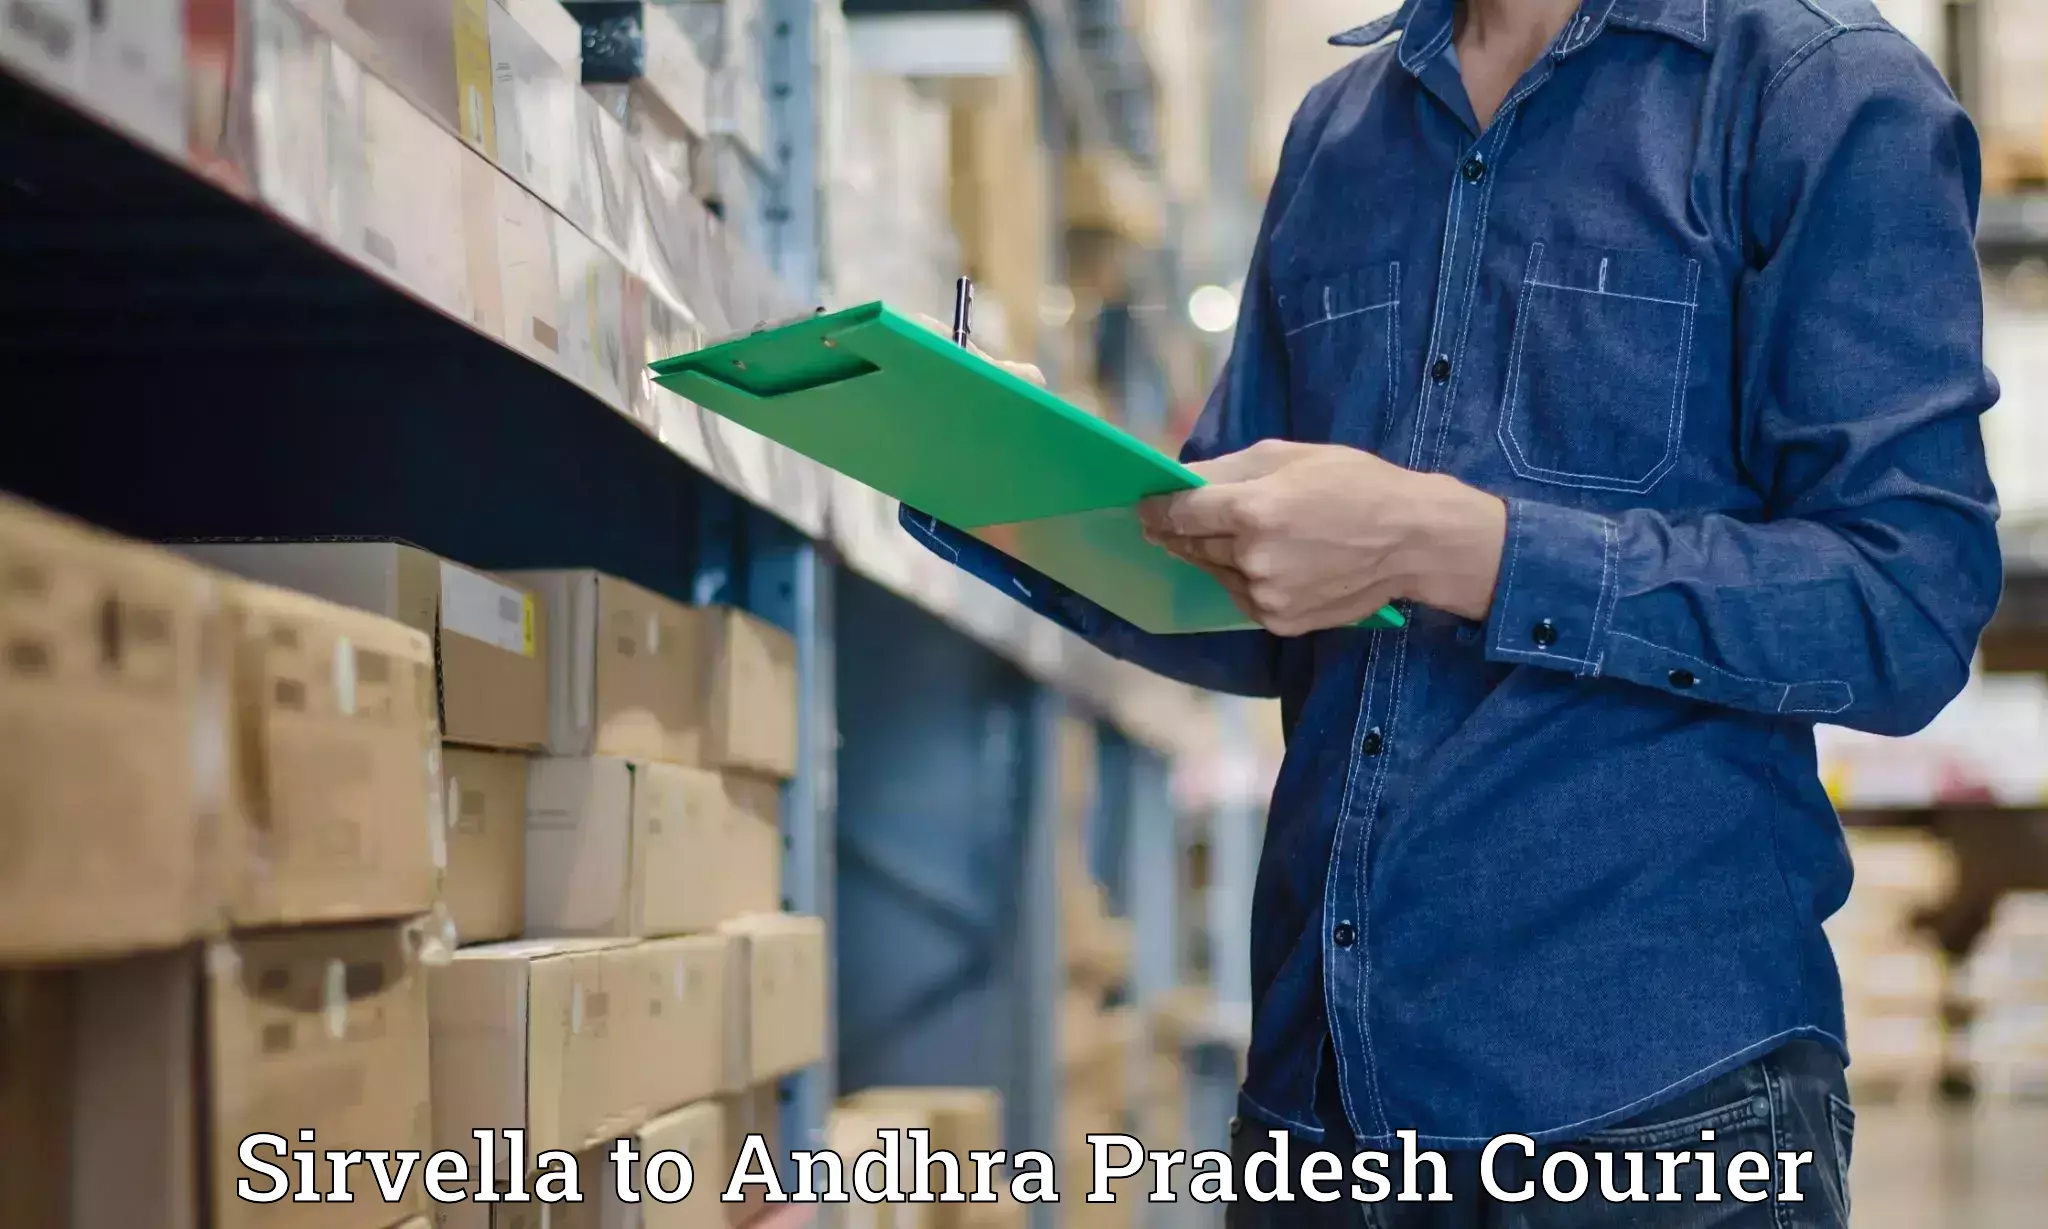 Baggage transport scheduler Sirvella to Andhra Pradesh